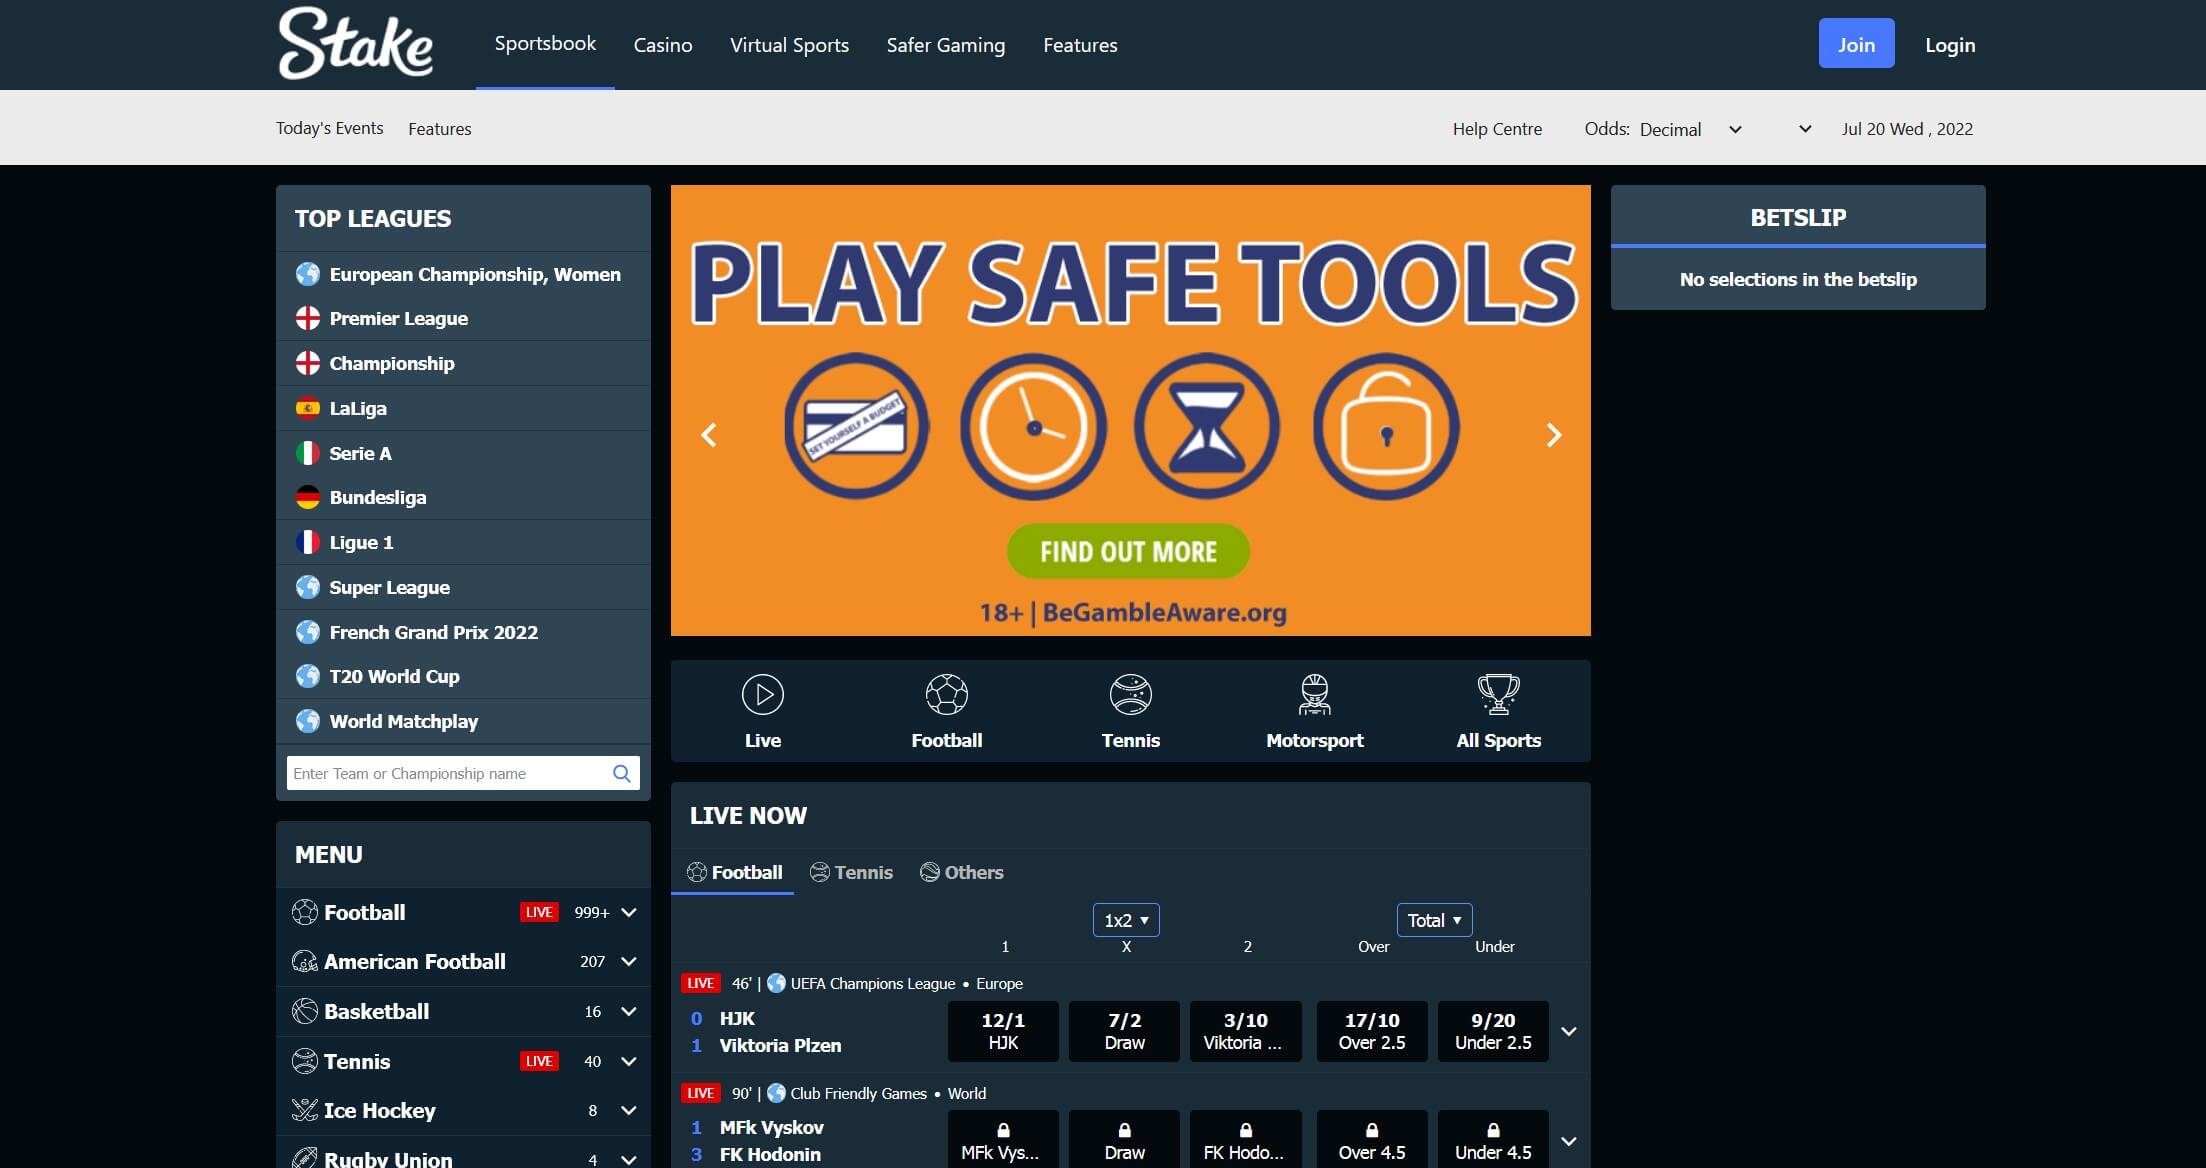 Home page of gambling platform Stake